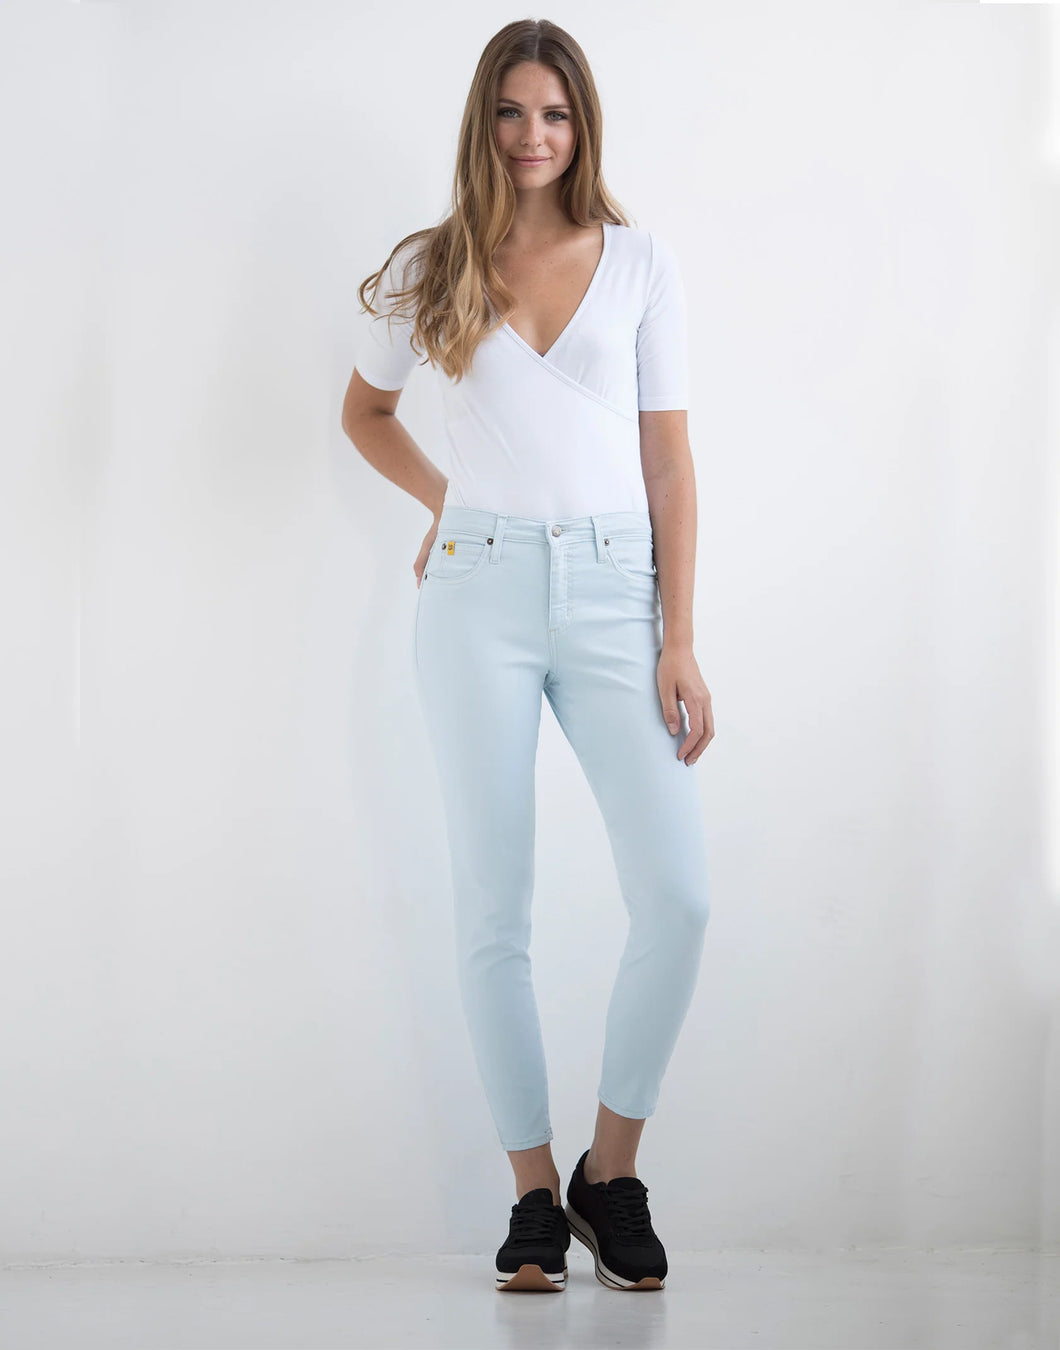 Jeans Rachel - Foam - Taille Classique - Entrejambe 27''- Yoga Jeans 1161